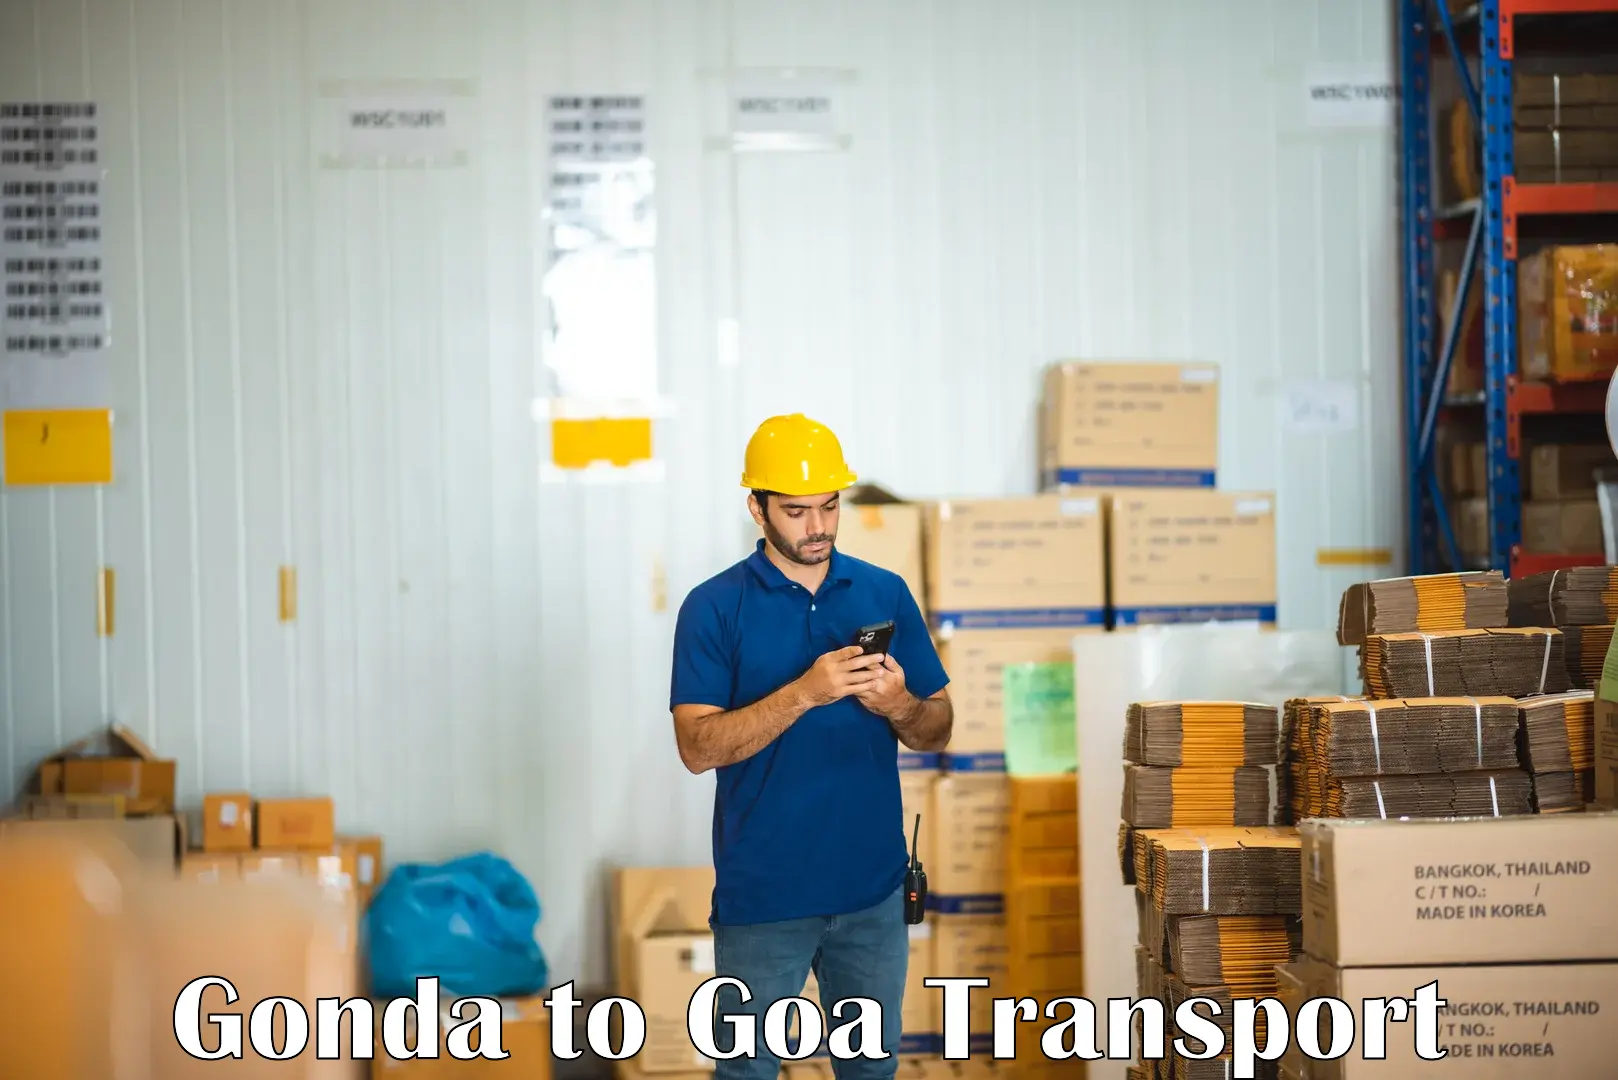 Bike transport service Gonda to Goa